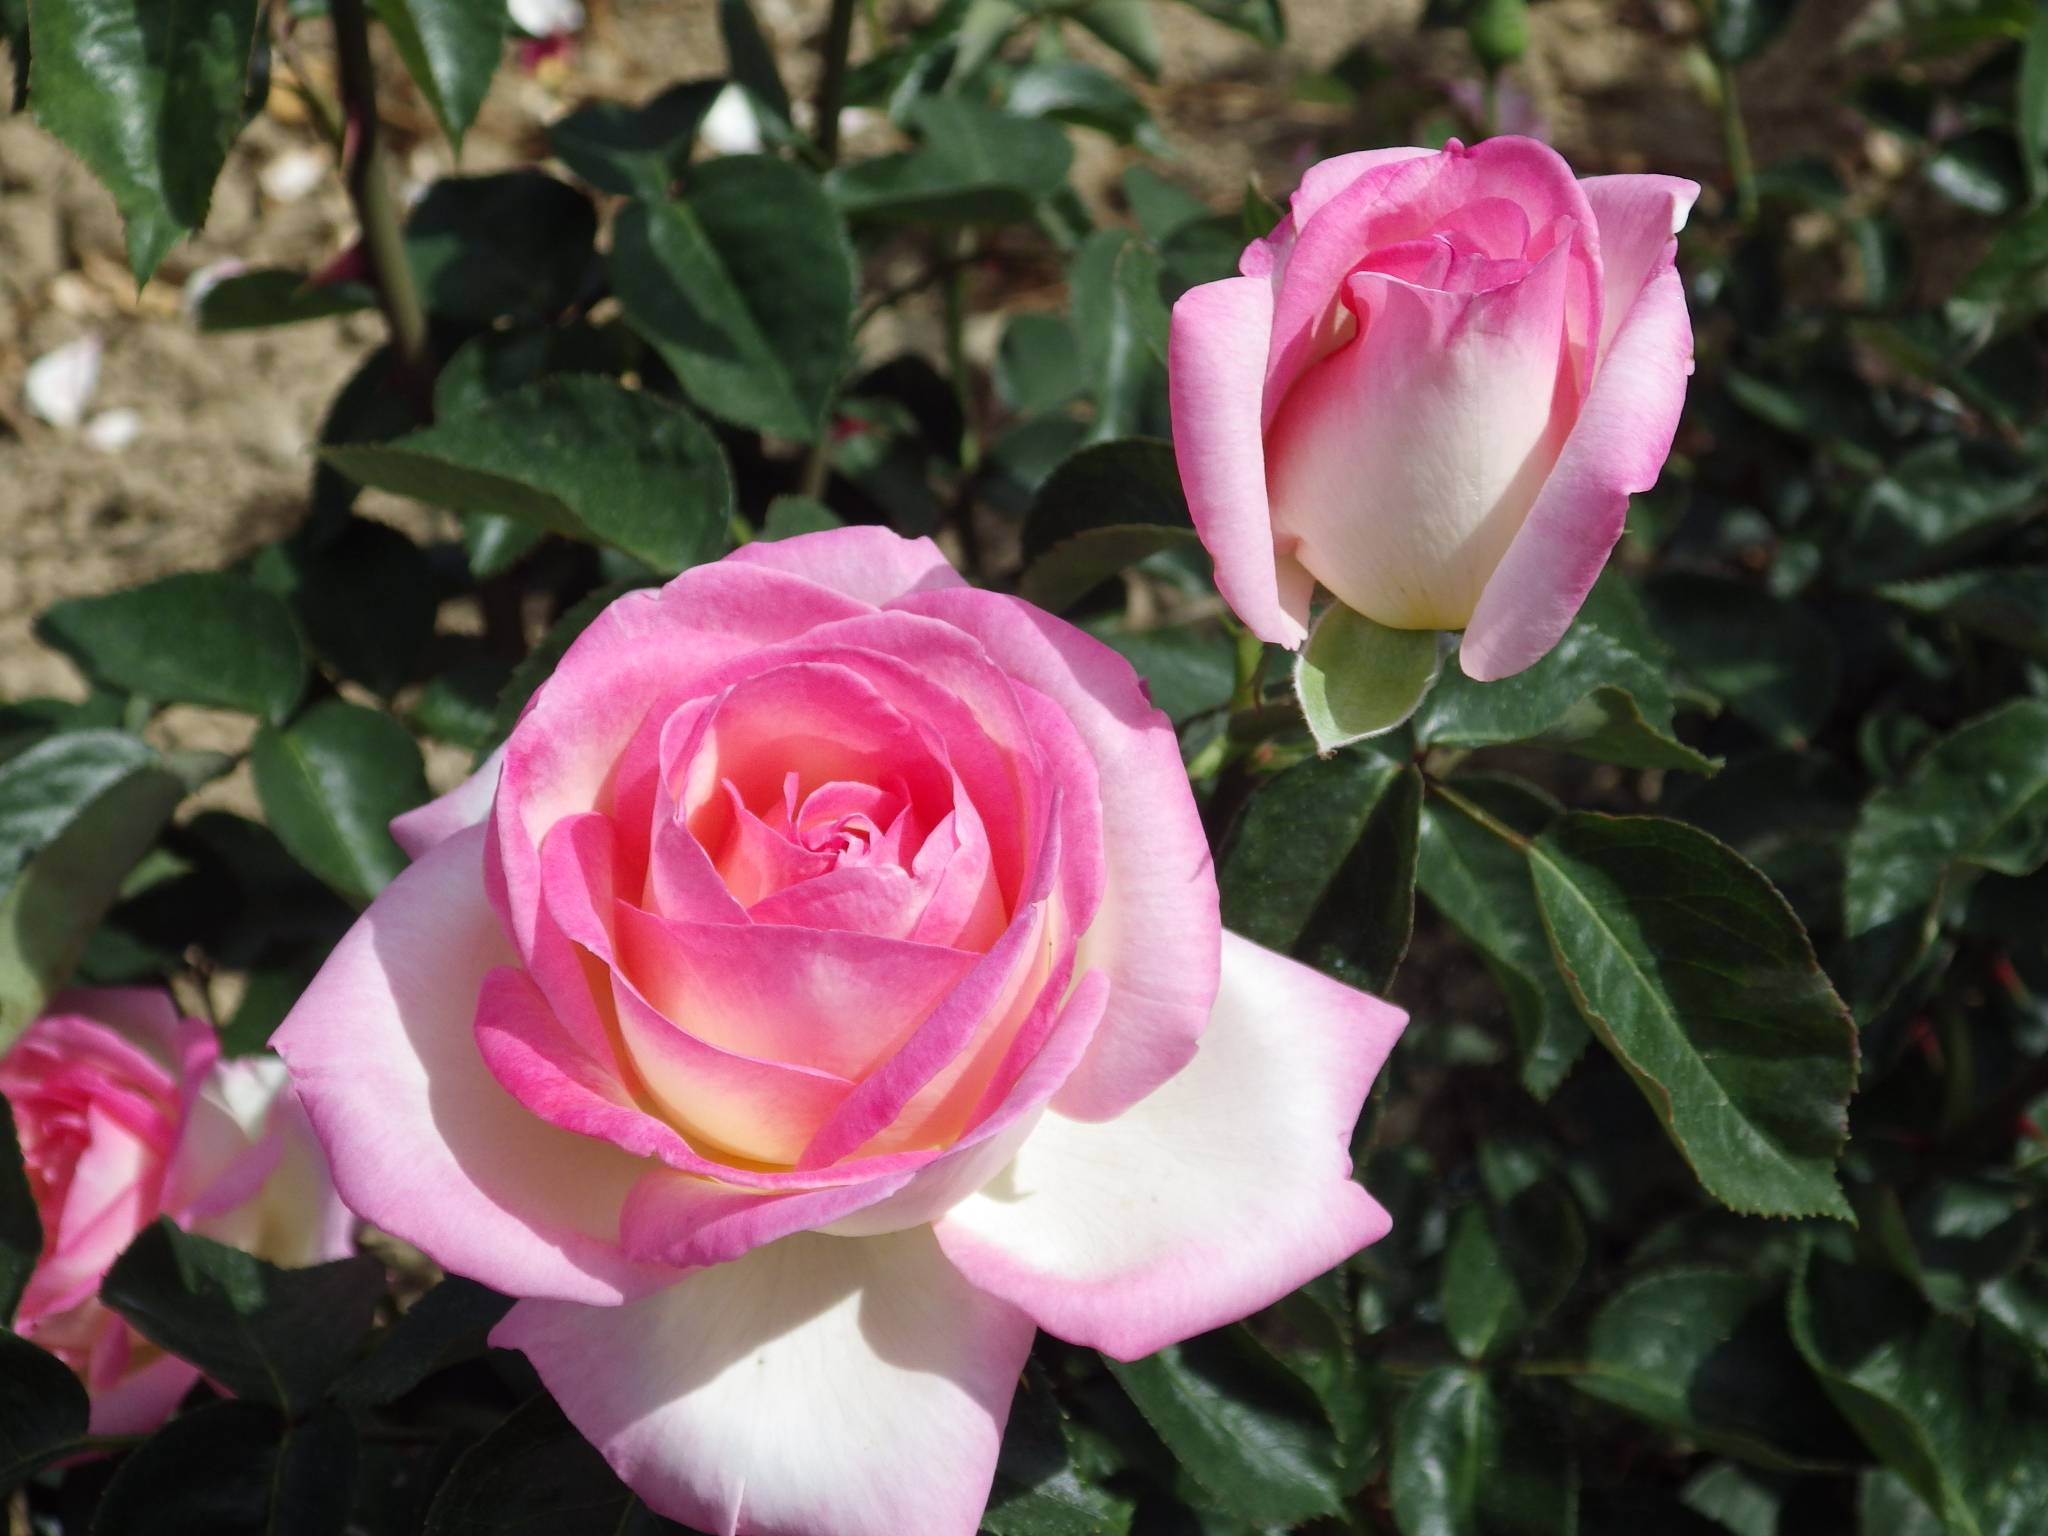 Роза принцесса монако: описание с фото, уход, а также альтернативные названия с приставками шарлен, грейс и иными, которые даны представившей цветок фирмой мейян